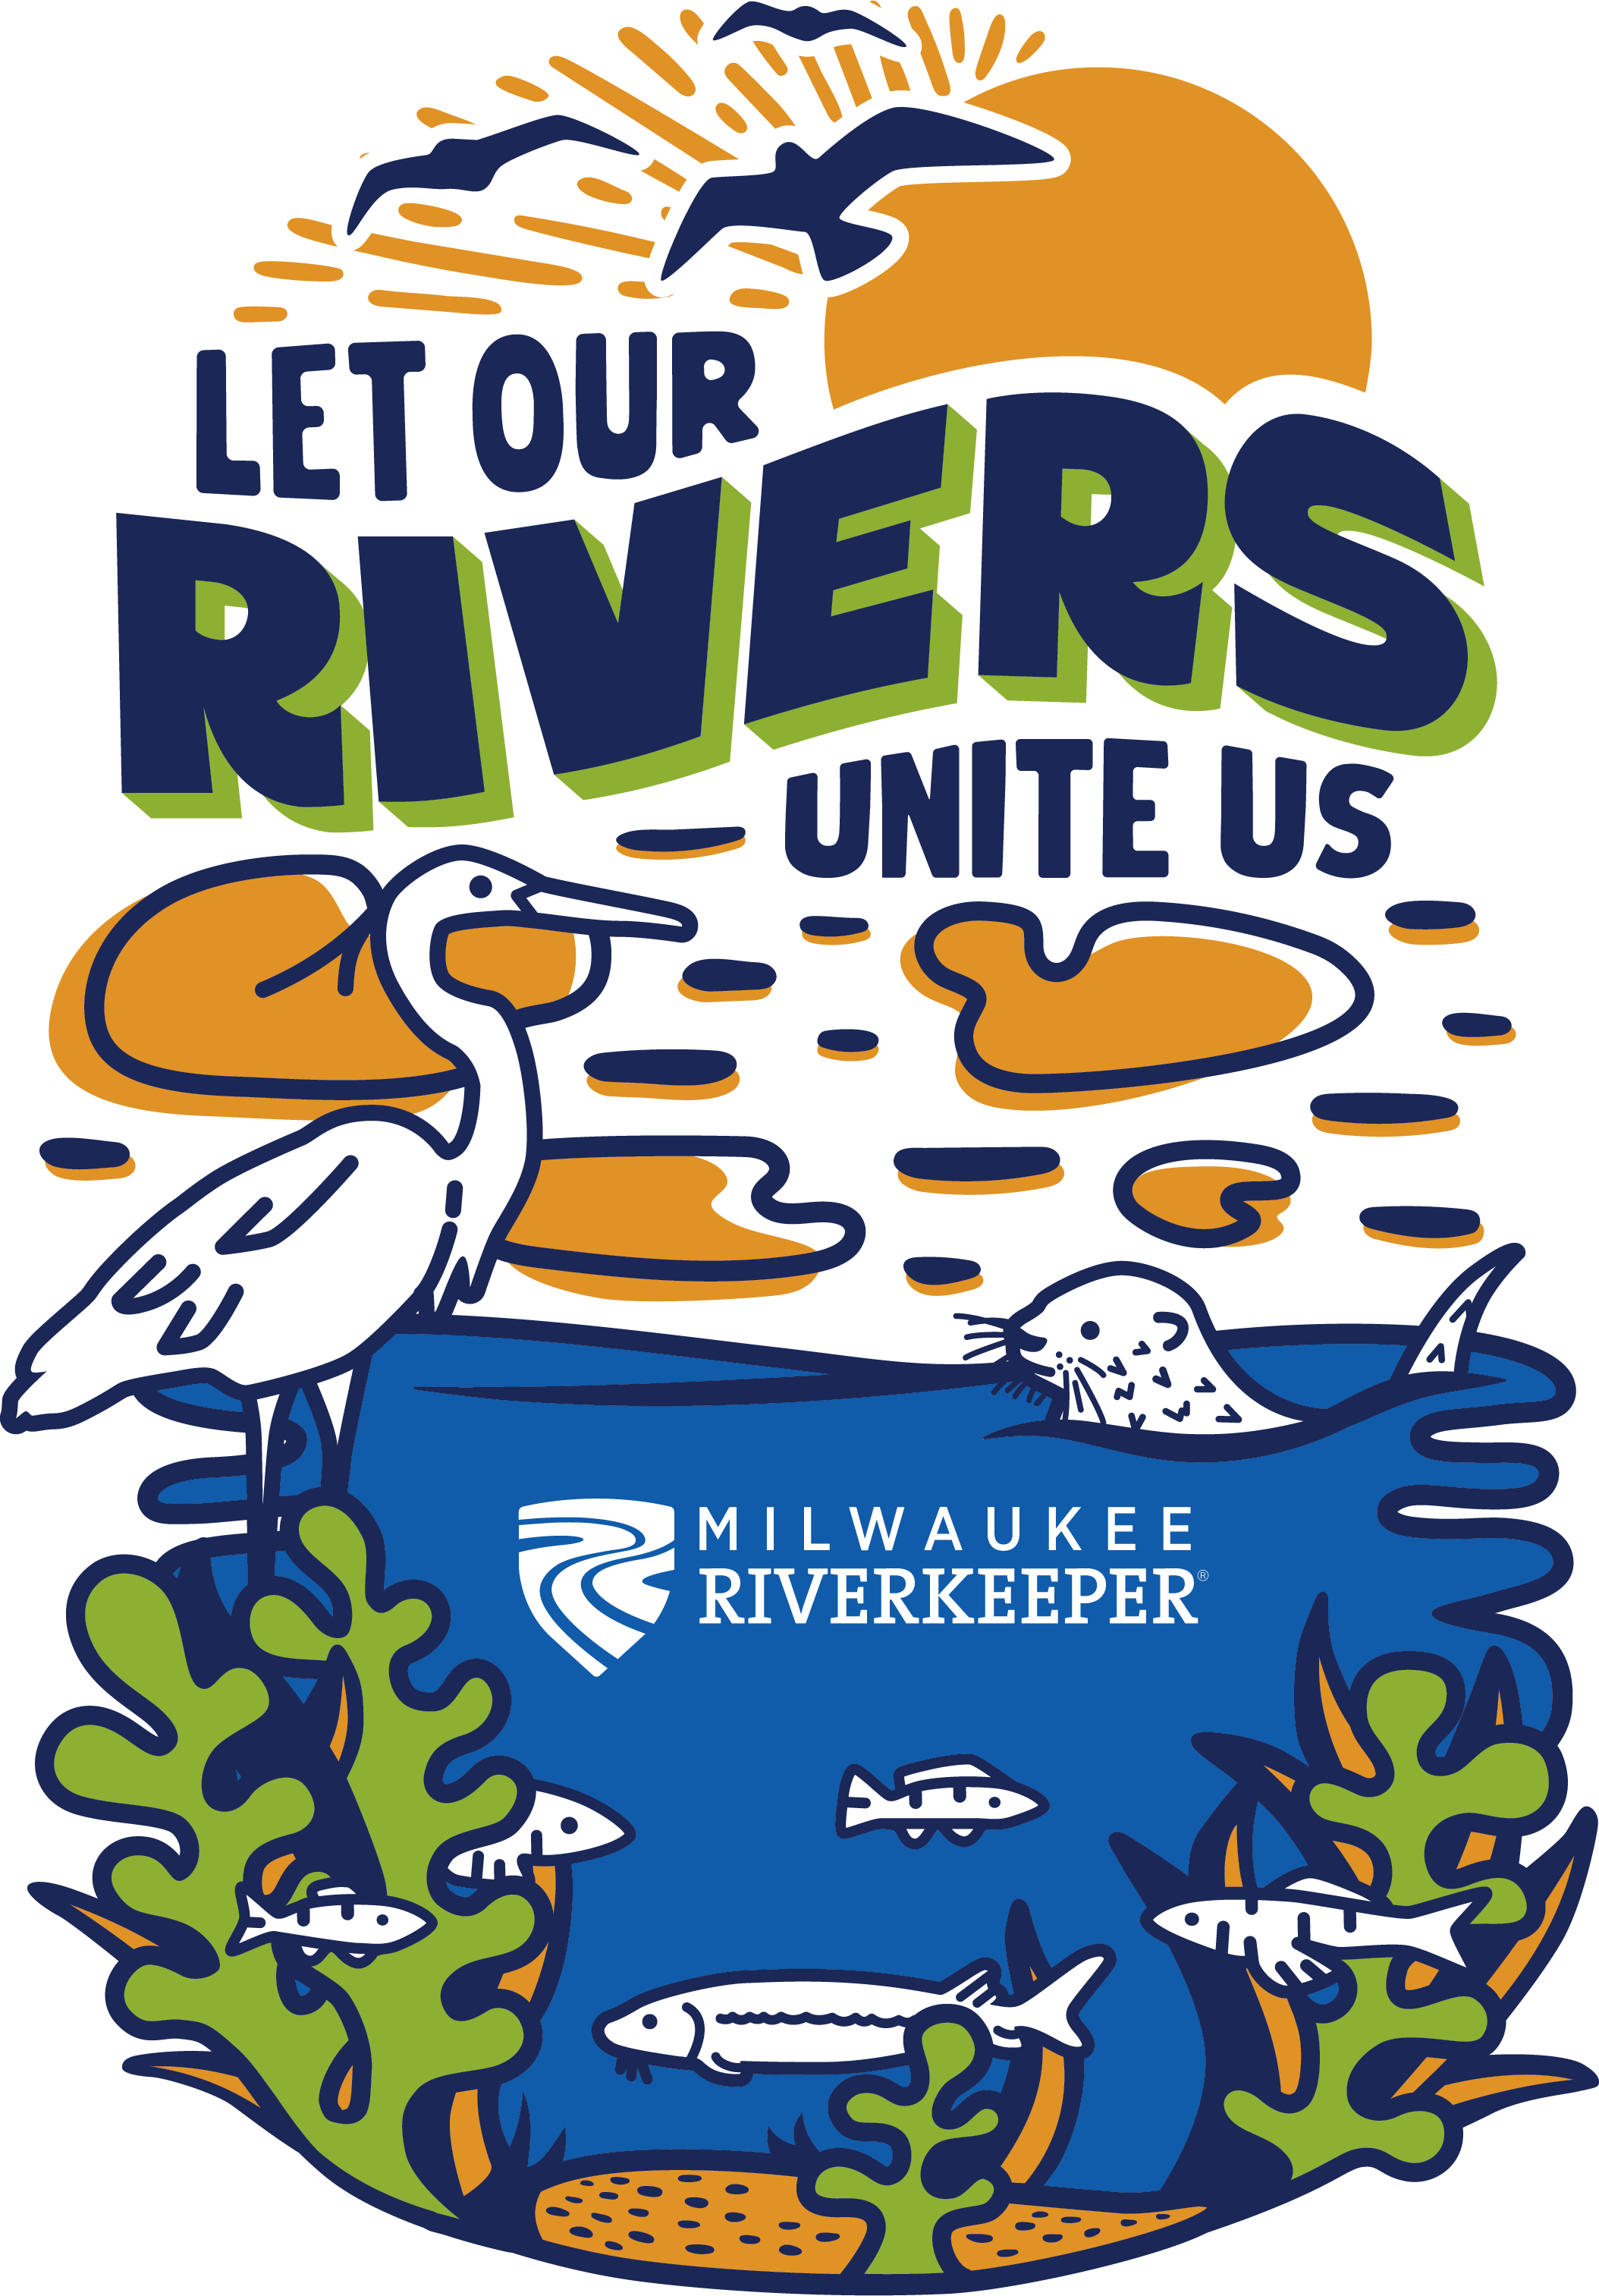 Let Our Rivers Unite Us!